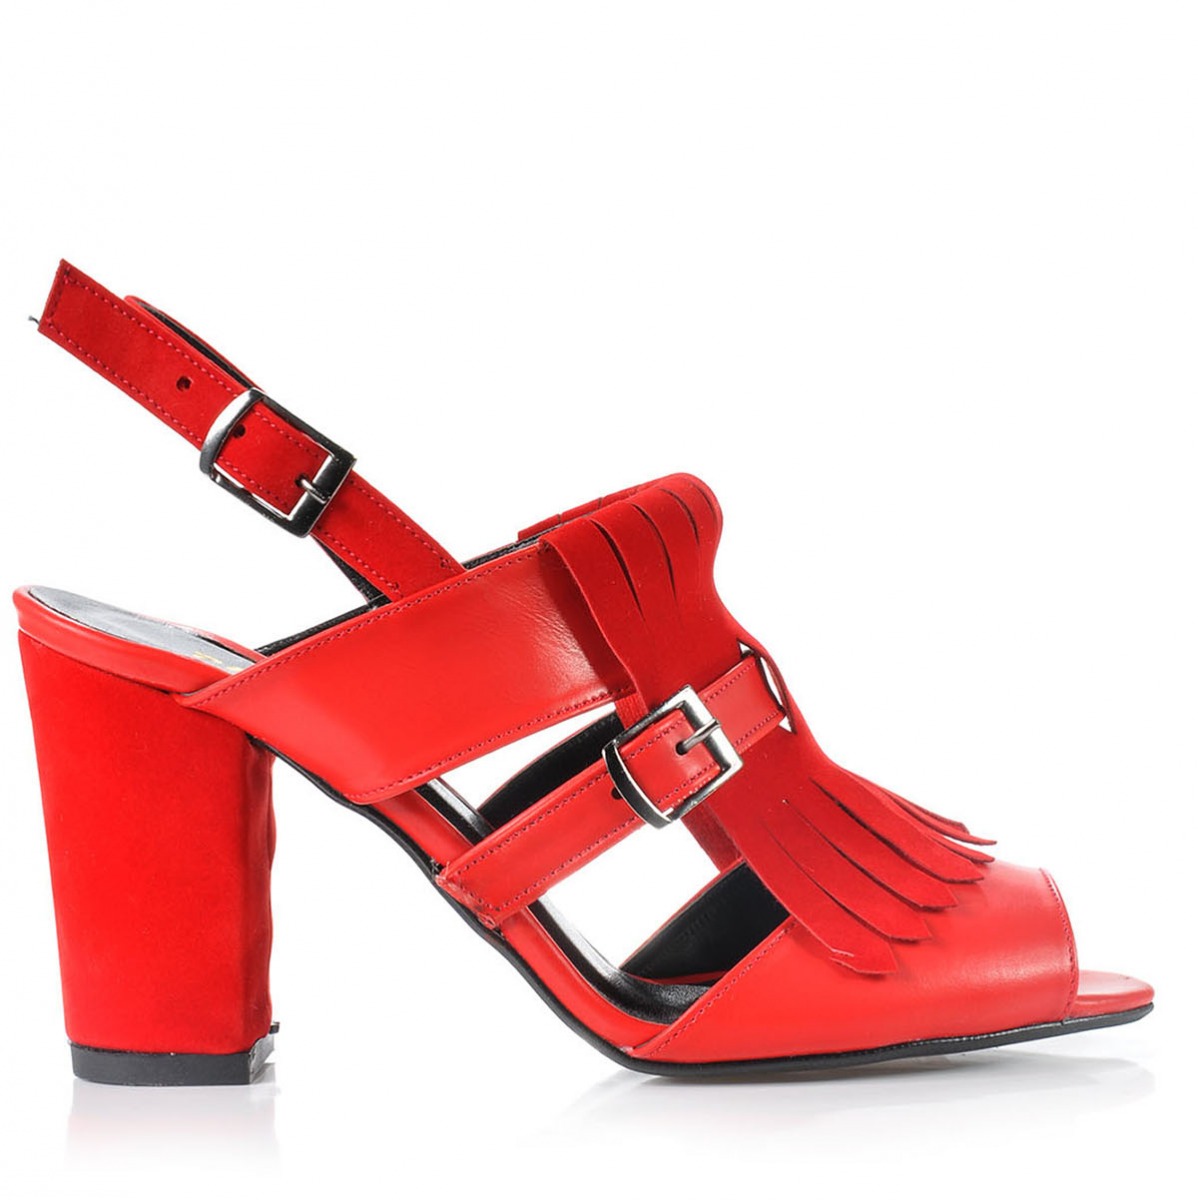 Flo Kadın  Kırmızı Klasik Topuklu Ayakkabı VZN-159Y. 3